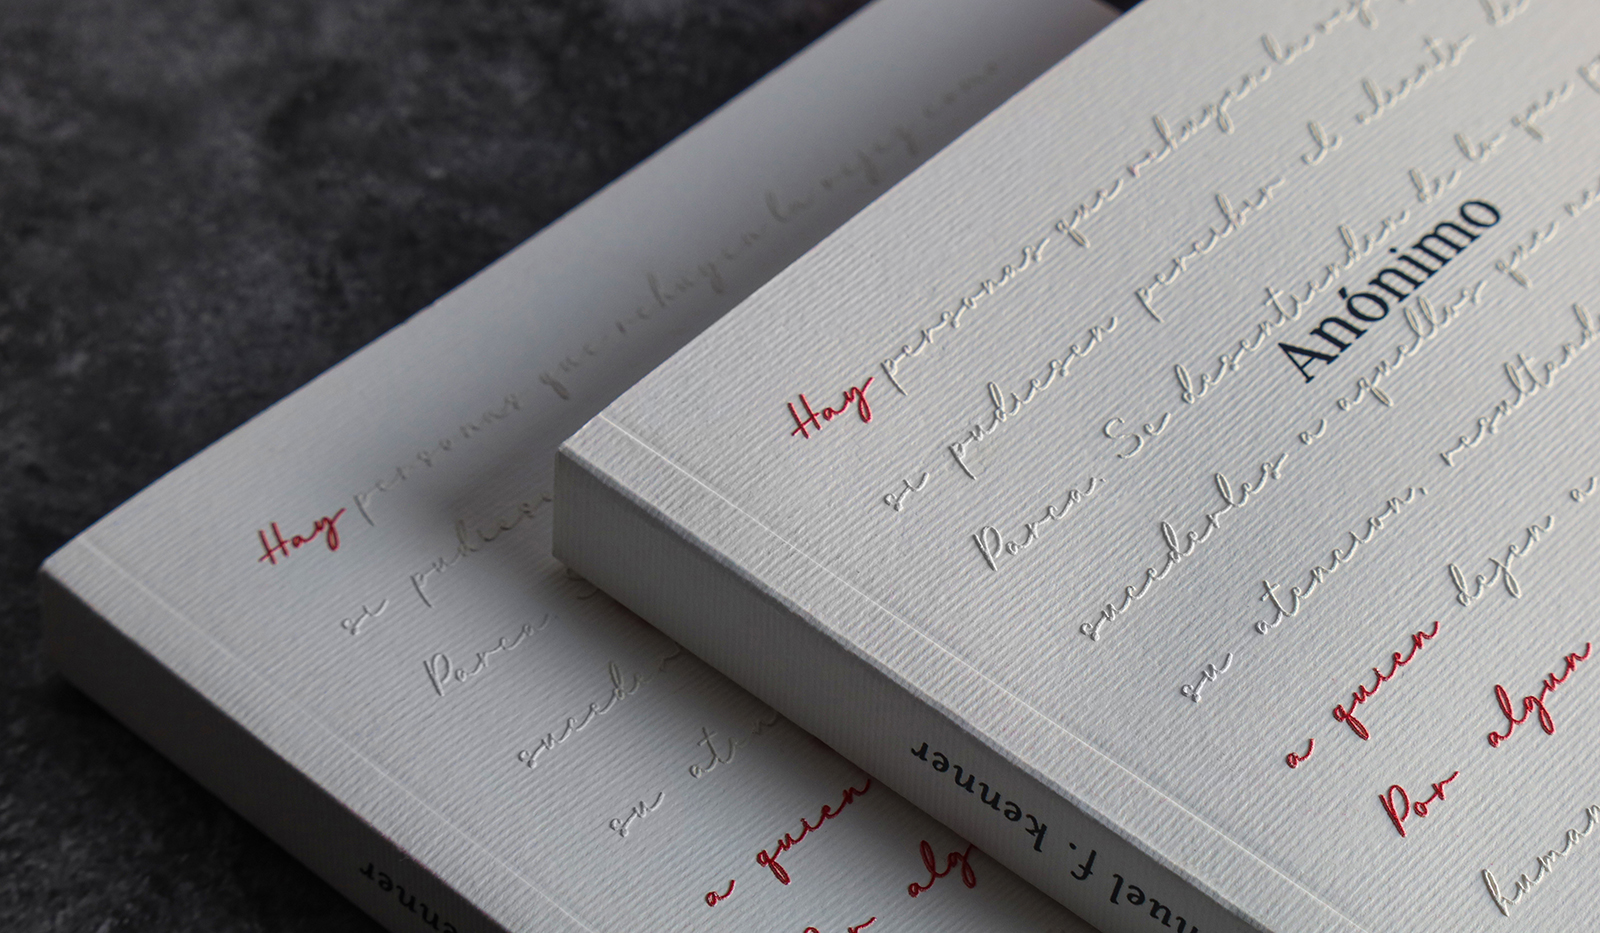 El proceso para diseñar cubiertas de libro con texturas